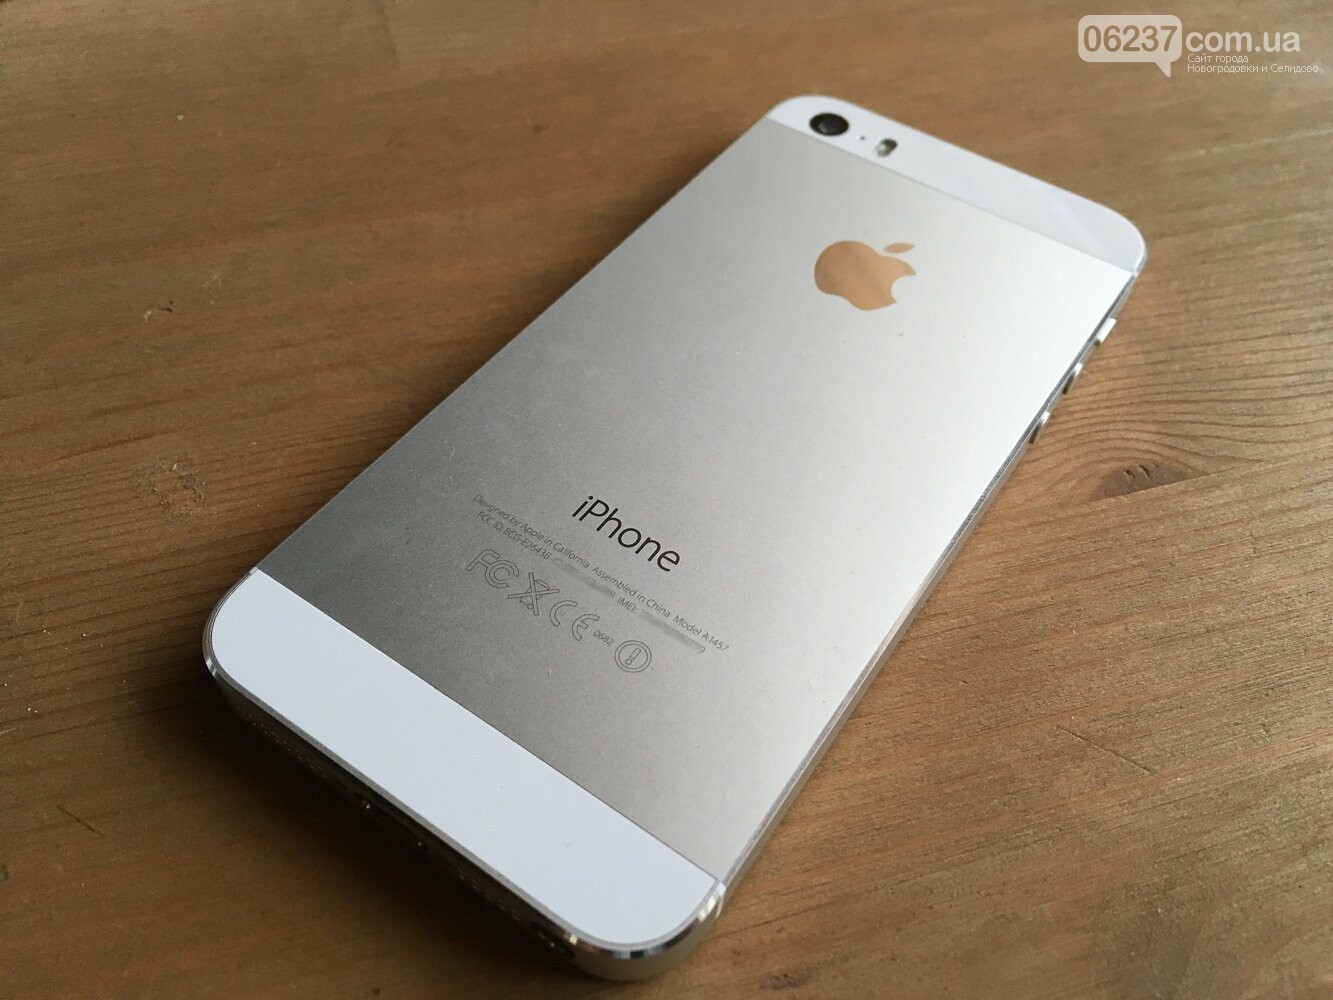 Apple останавливает продажу популярной модели iPhone, фото-1